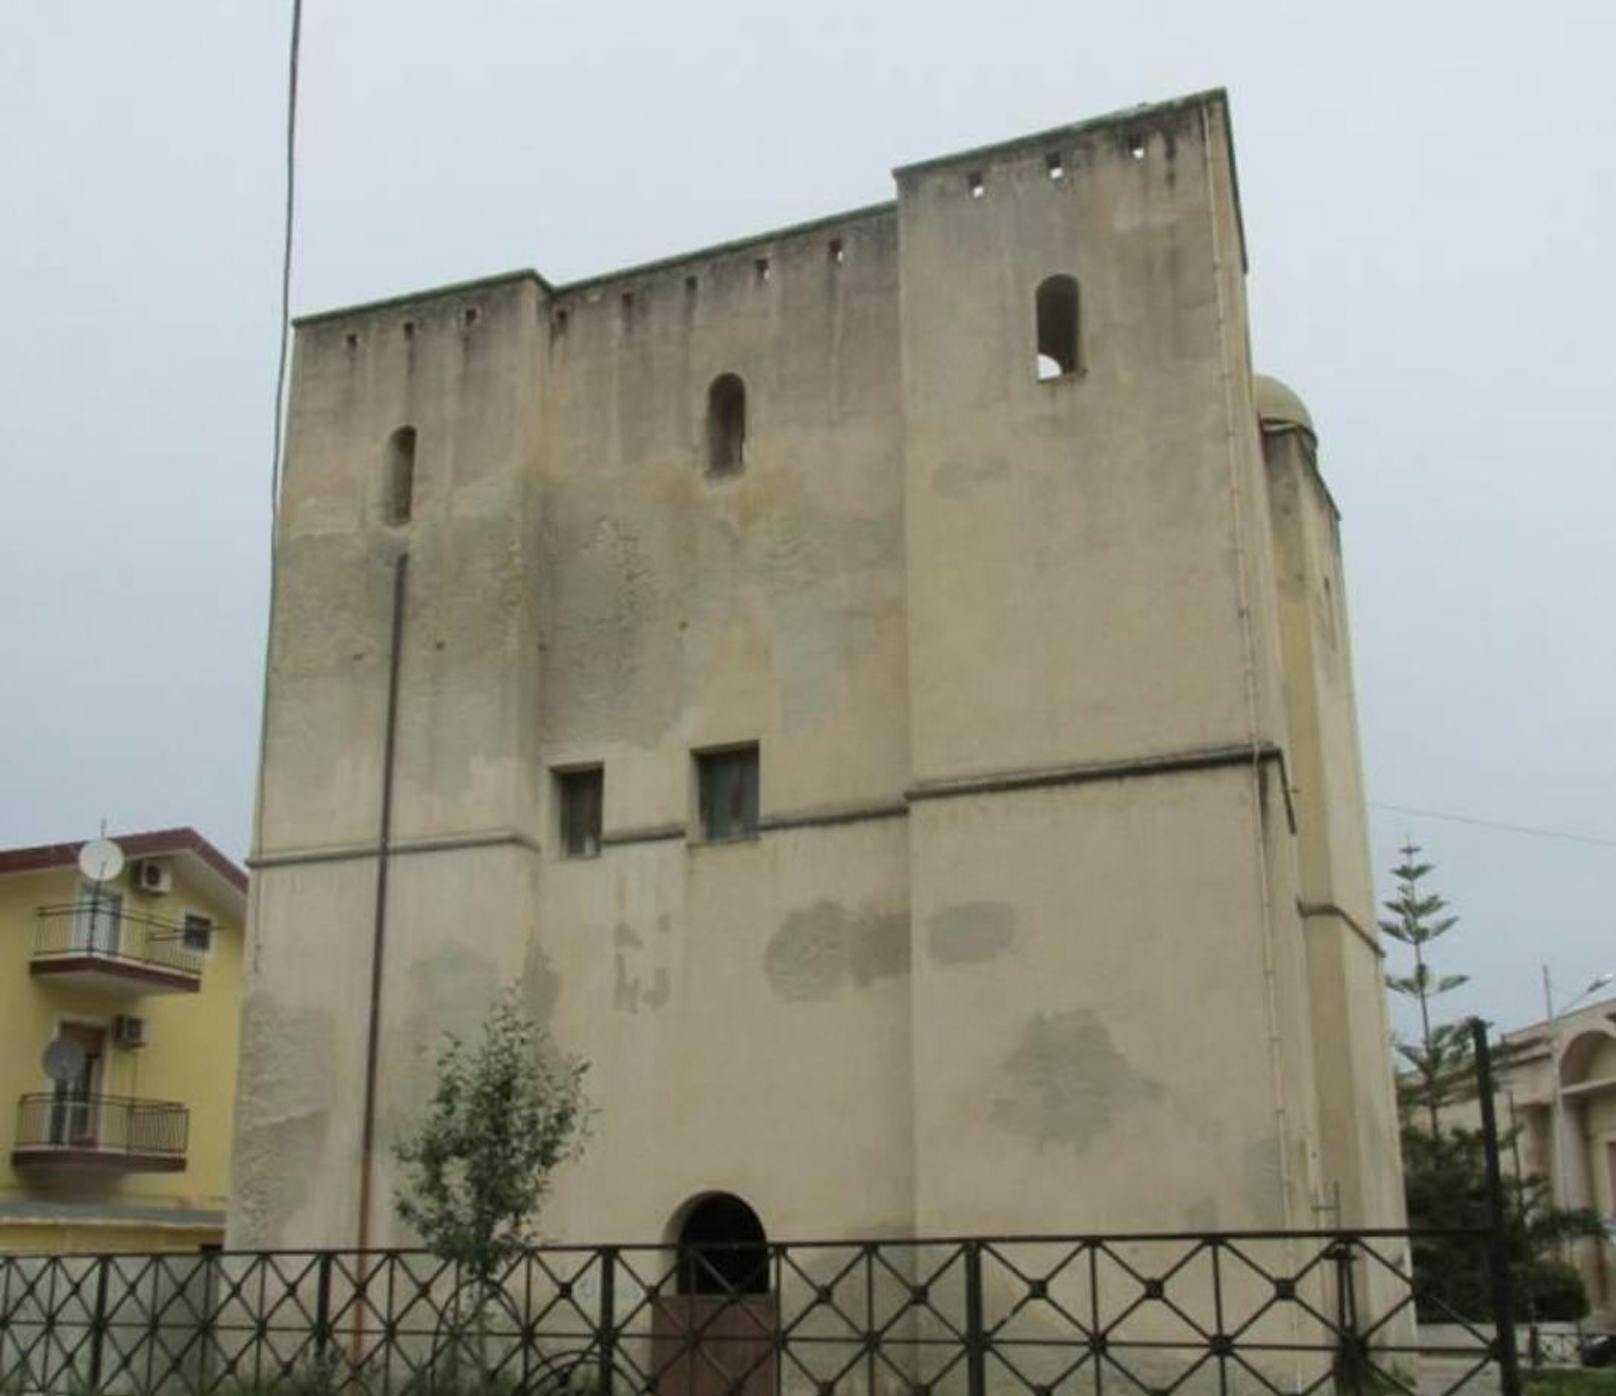 <b>Torre Cupo</b>
Der Turm steht in Schiavonea, einem früheren Fischerdorf in der Region Kalabrien. Er hat eine Fläche von 550 Quadratmetern und darf für Gewerbe genutzt werden. Er stammt aus dem 16. Jahrhundert.